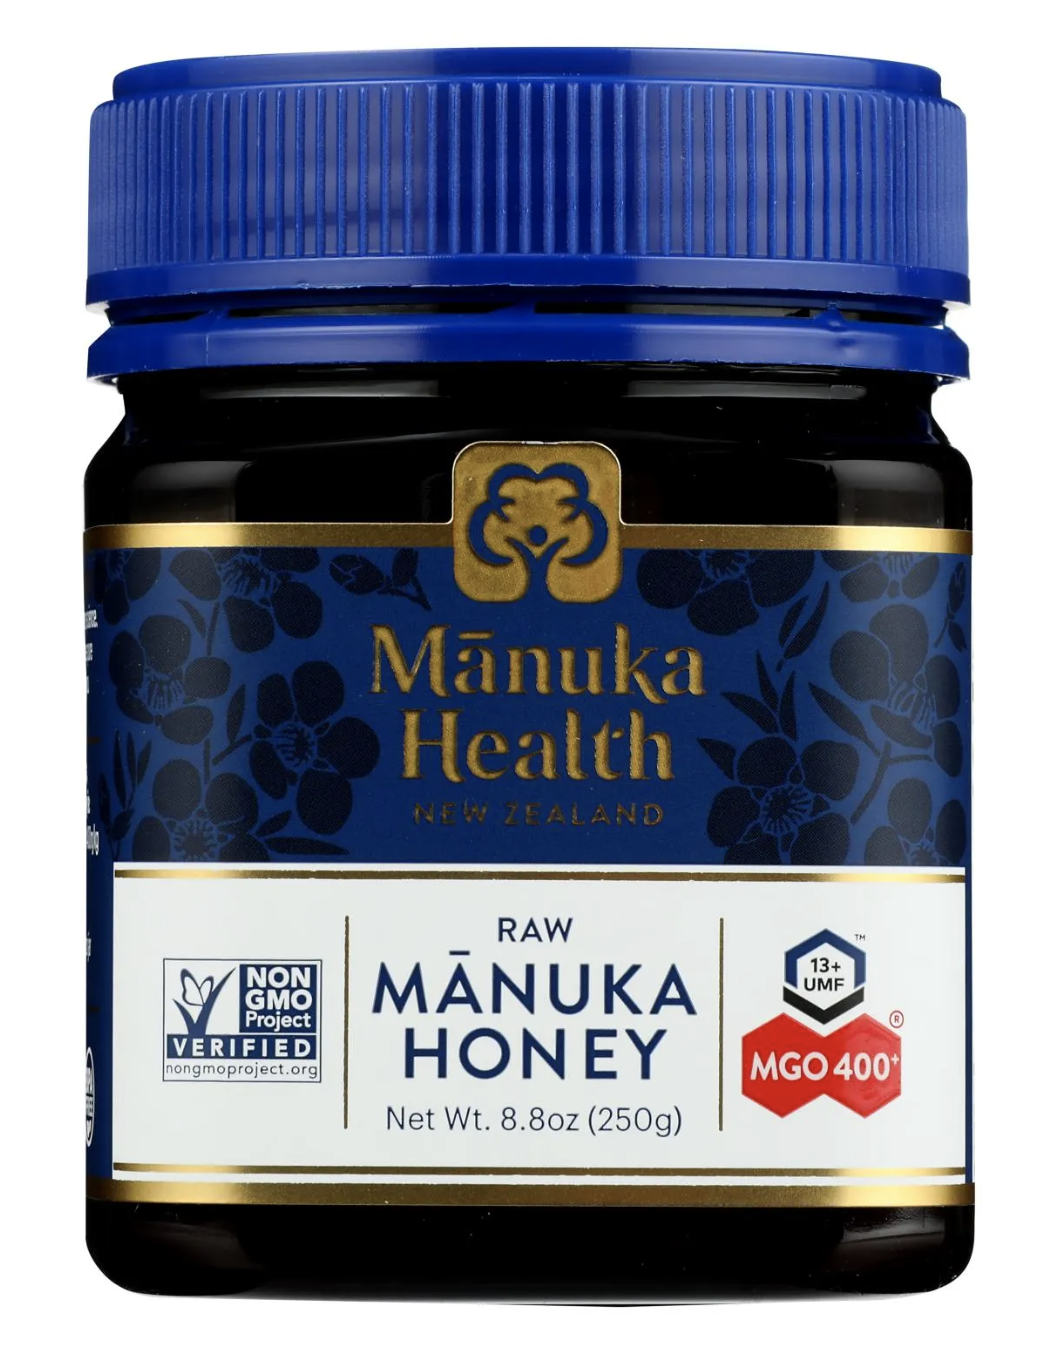 Manuka Health Raw Honey